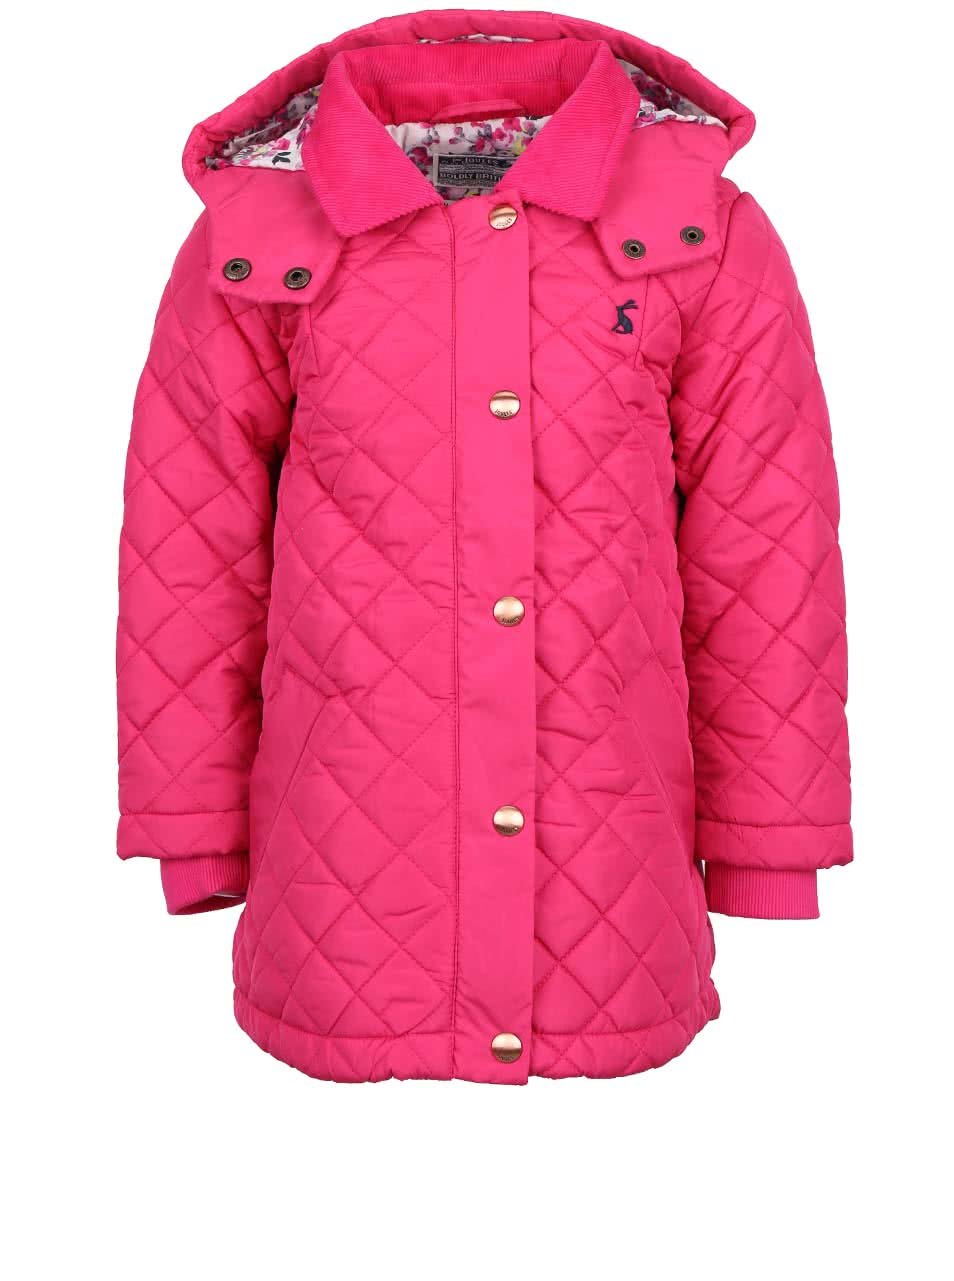 Růžová holčičí prošívaná bunda Tom Joule Marcotte